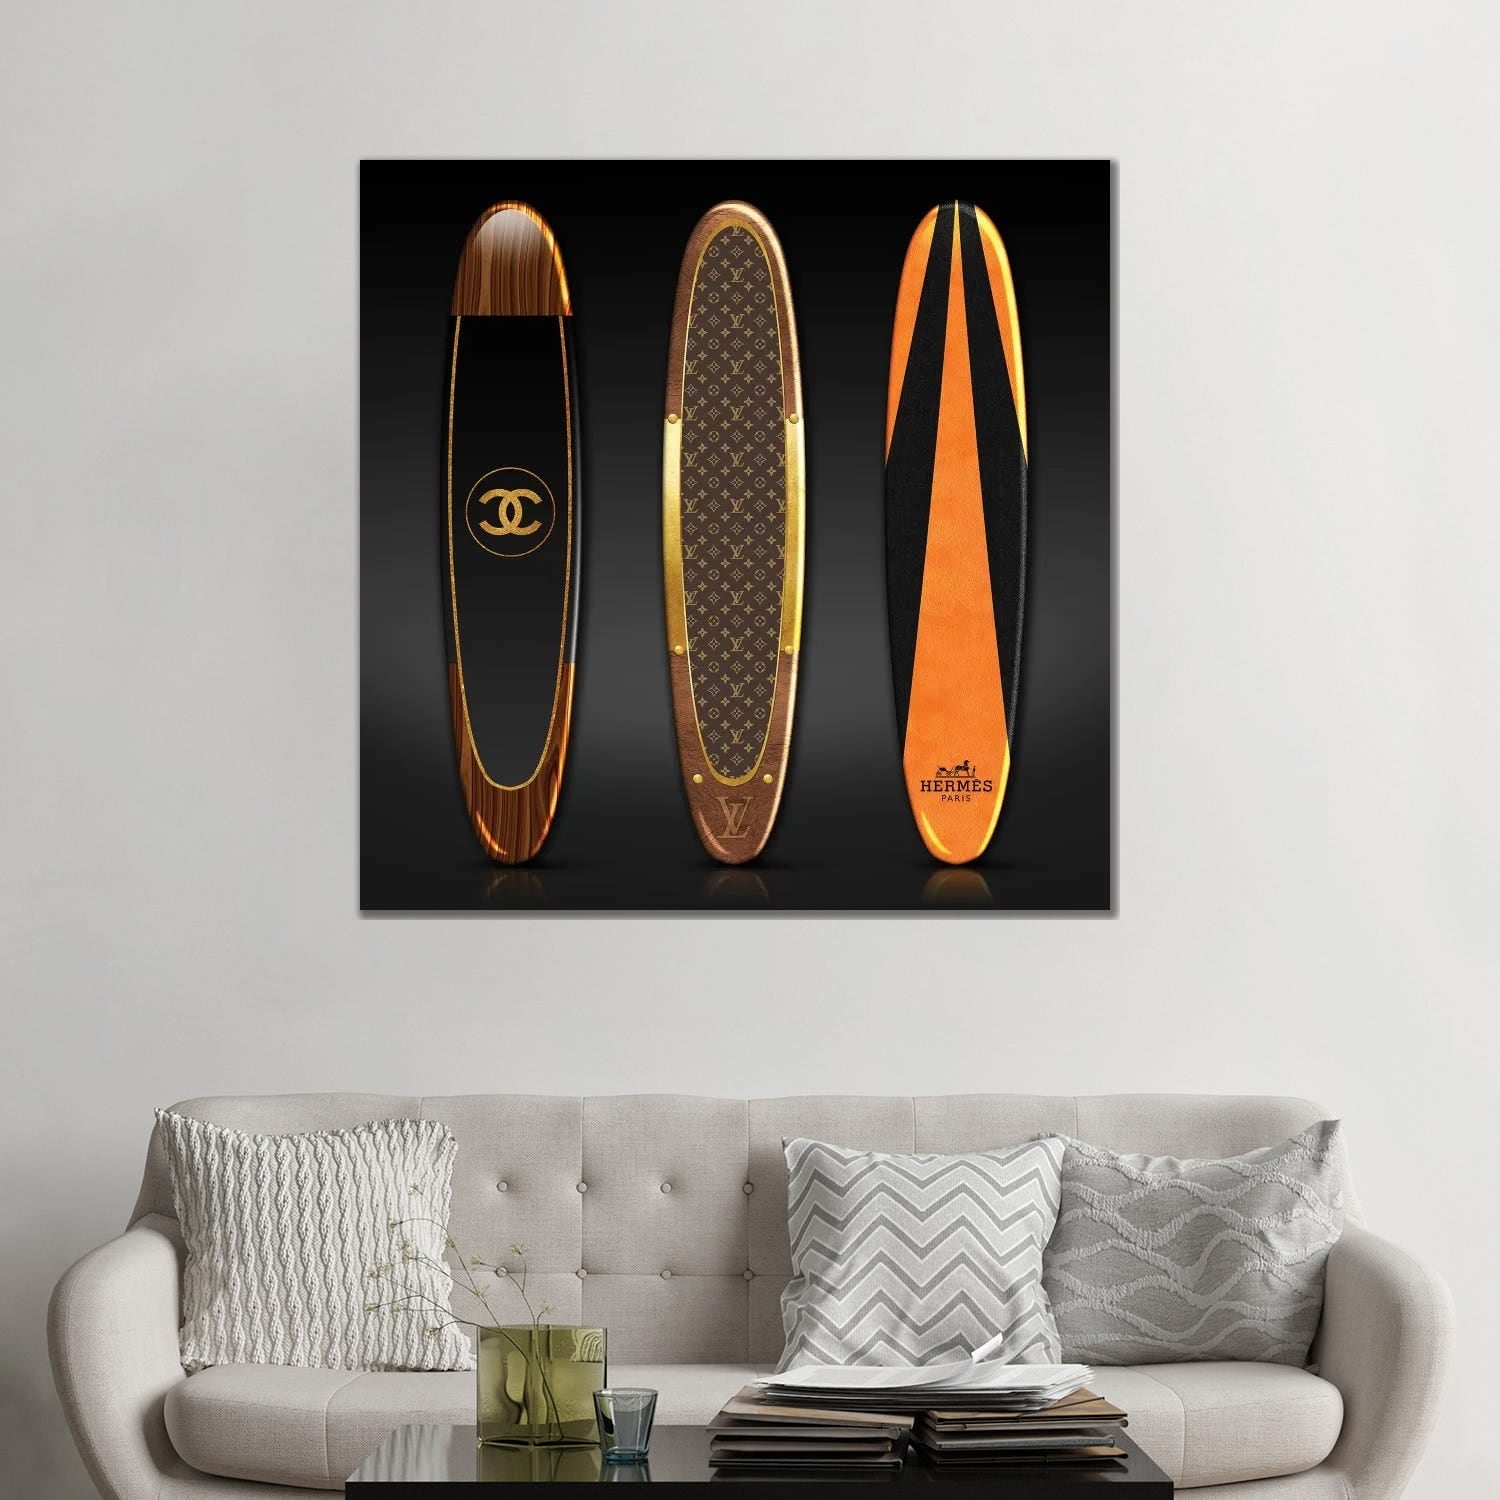 iCanvas Surf Collection by Alexandre Venancio Canvas Print - Bed